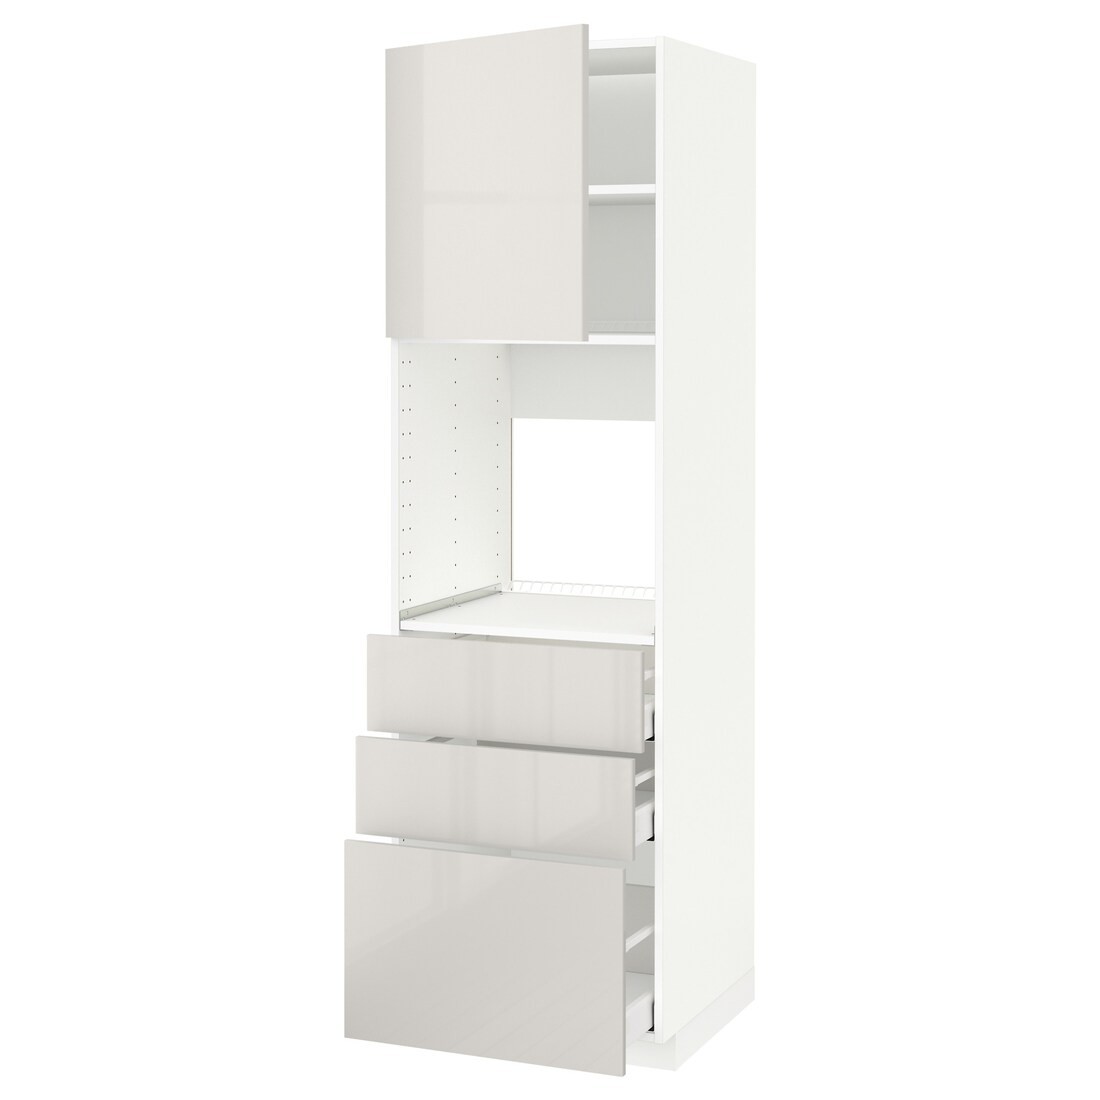 METOD МЕТОД / MAXIMERA МАКСИМЕРА Высокий шкаф для духовки, белый / Ringhult светло-серый, 60x60x200 см